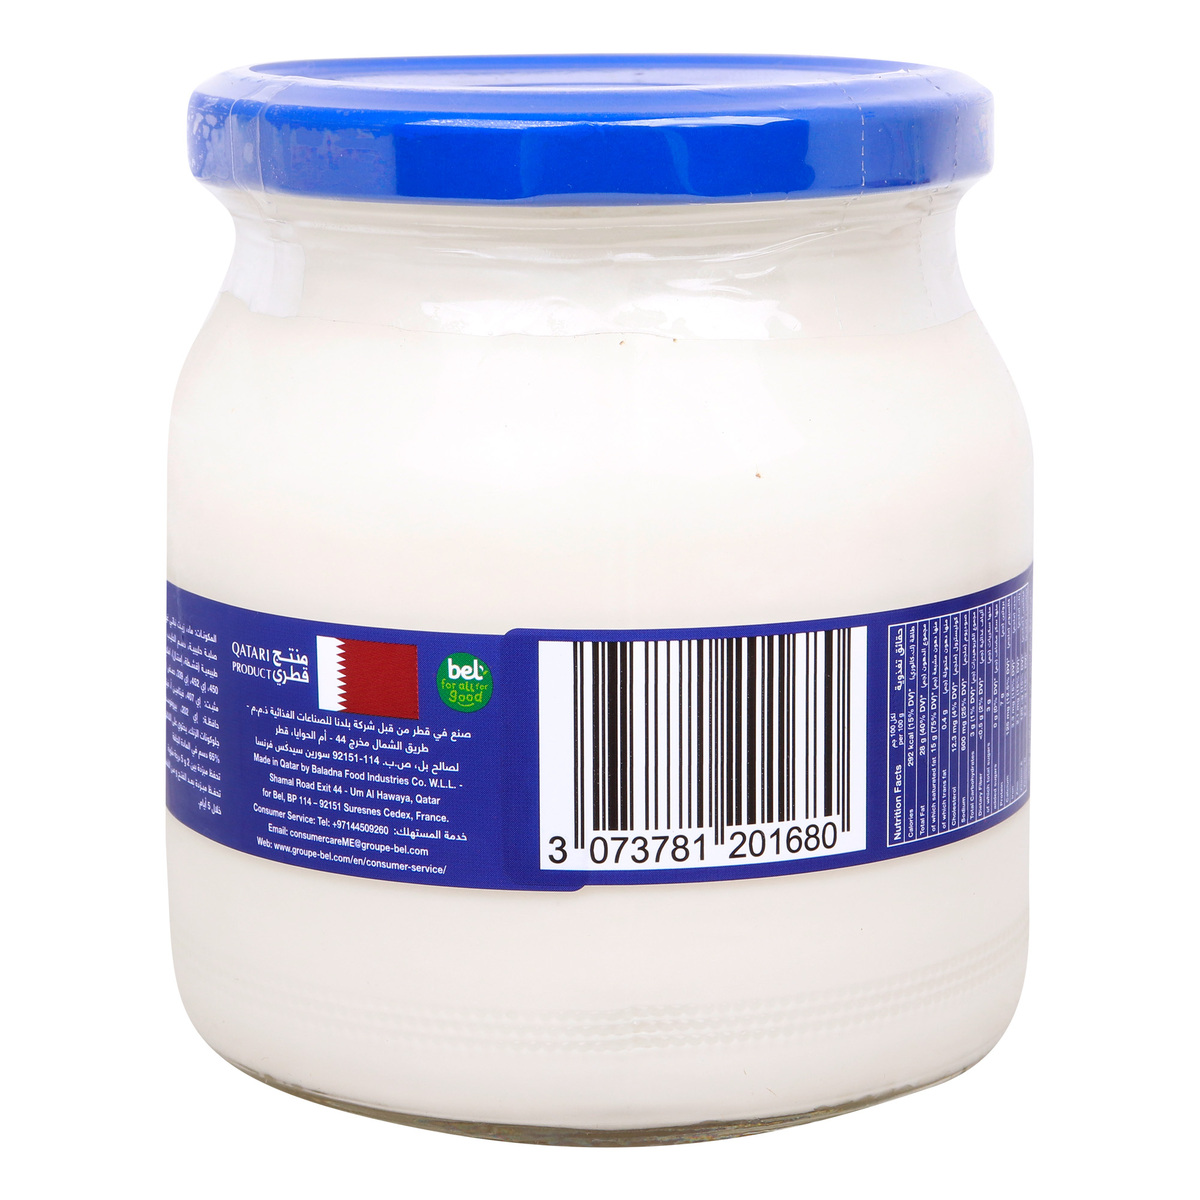 Regal Picon Creamy Cheese Spread Jar, 490 g